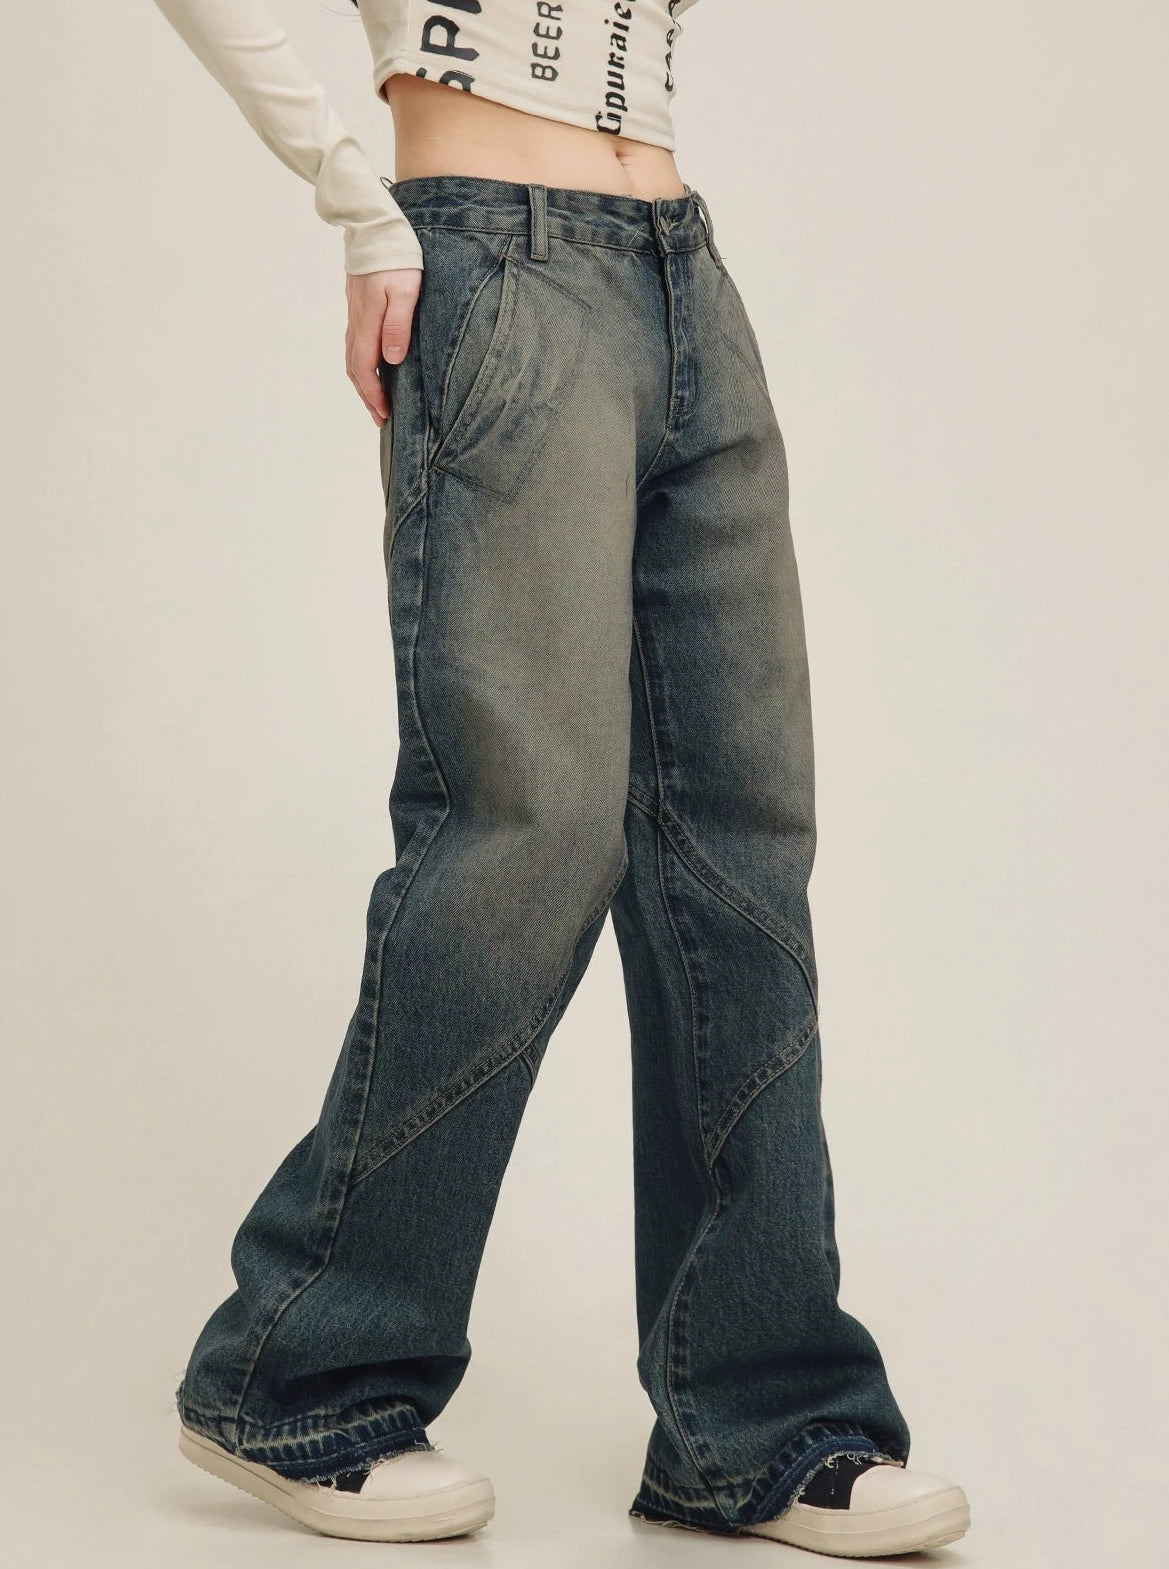 Vintage Wash Jeans Pants